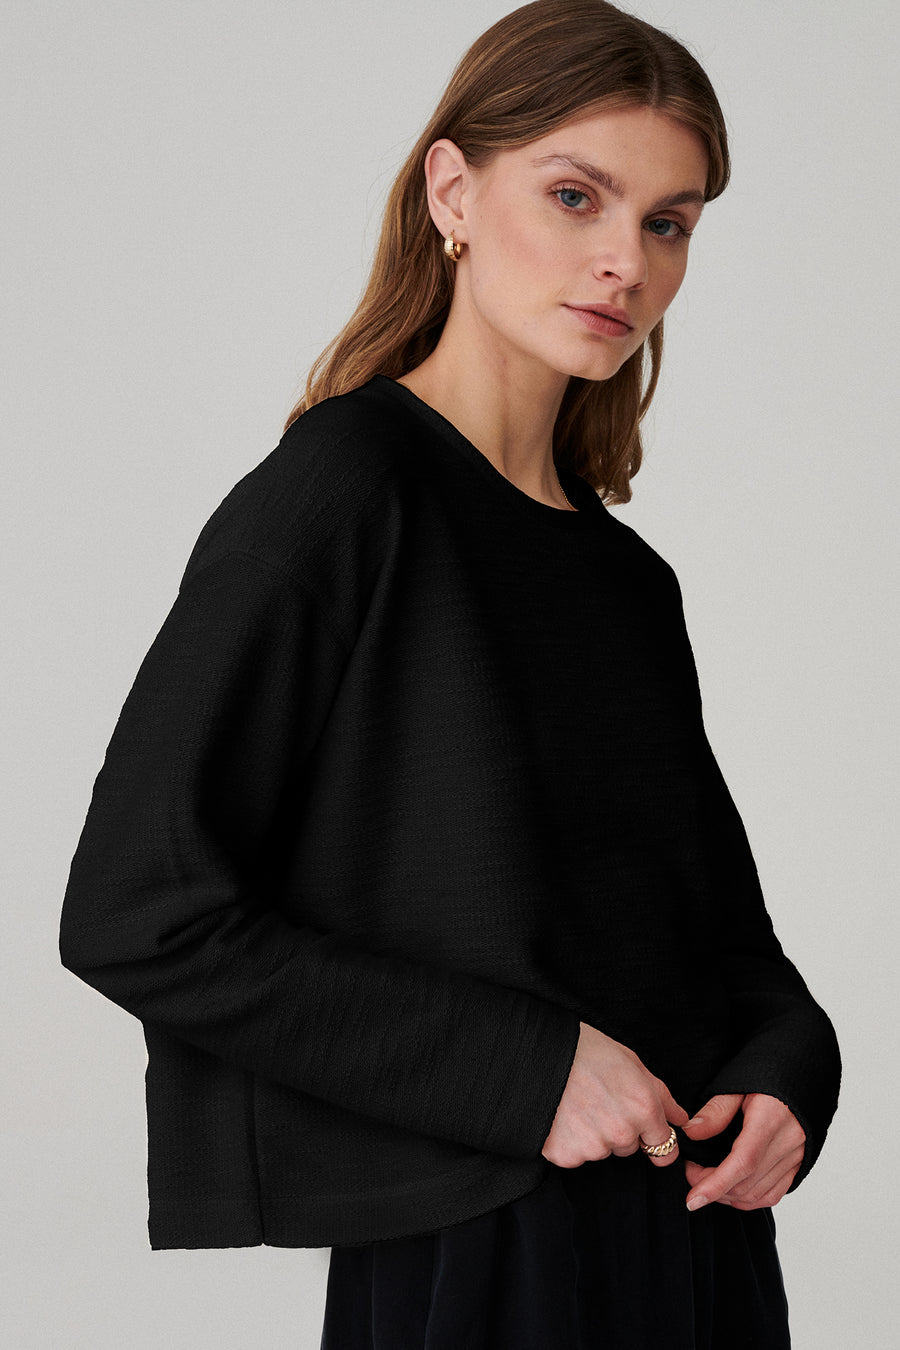 Bluza z bawełny / 14 / 04 / onyx black* ?Modelka ma 177cm wzrostu i nosi rozmiar XS/S? |